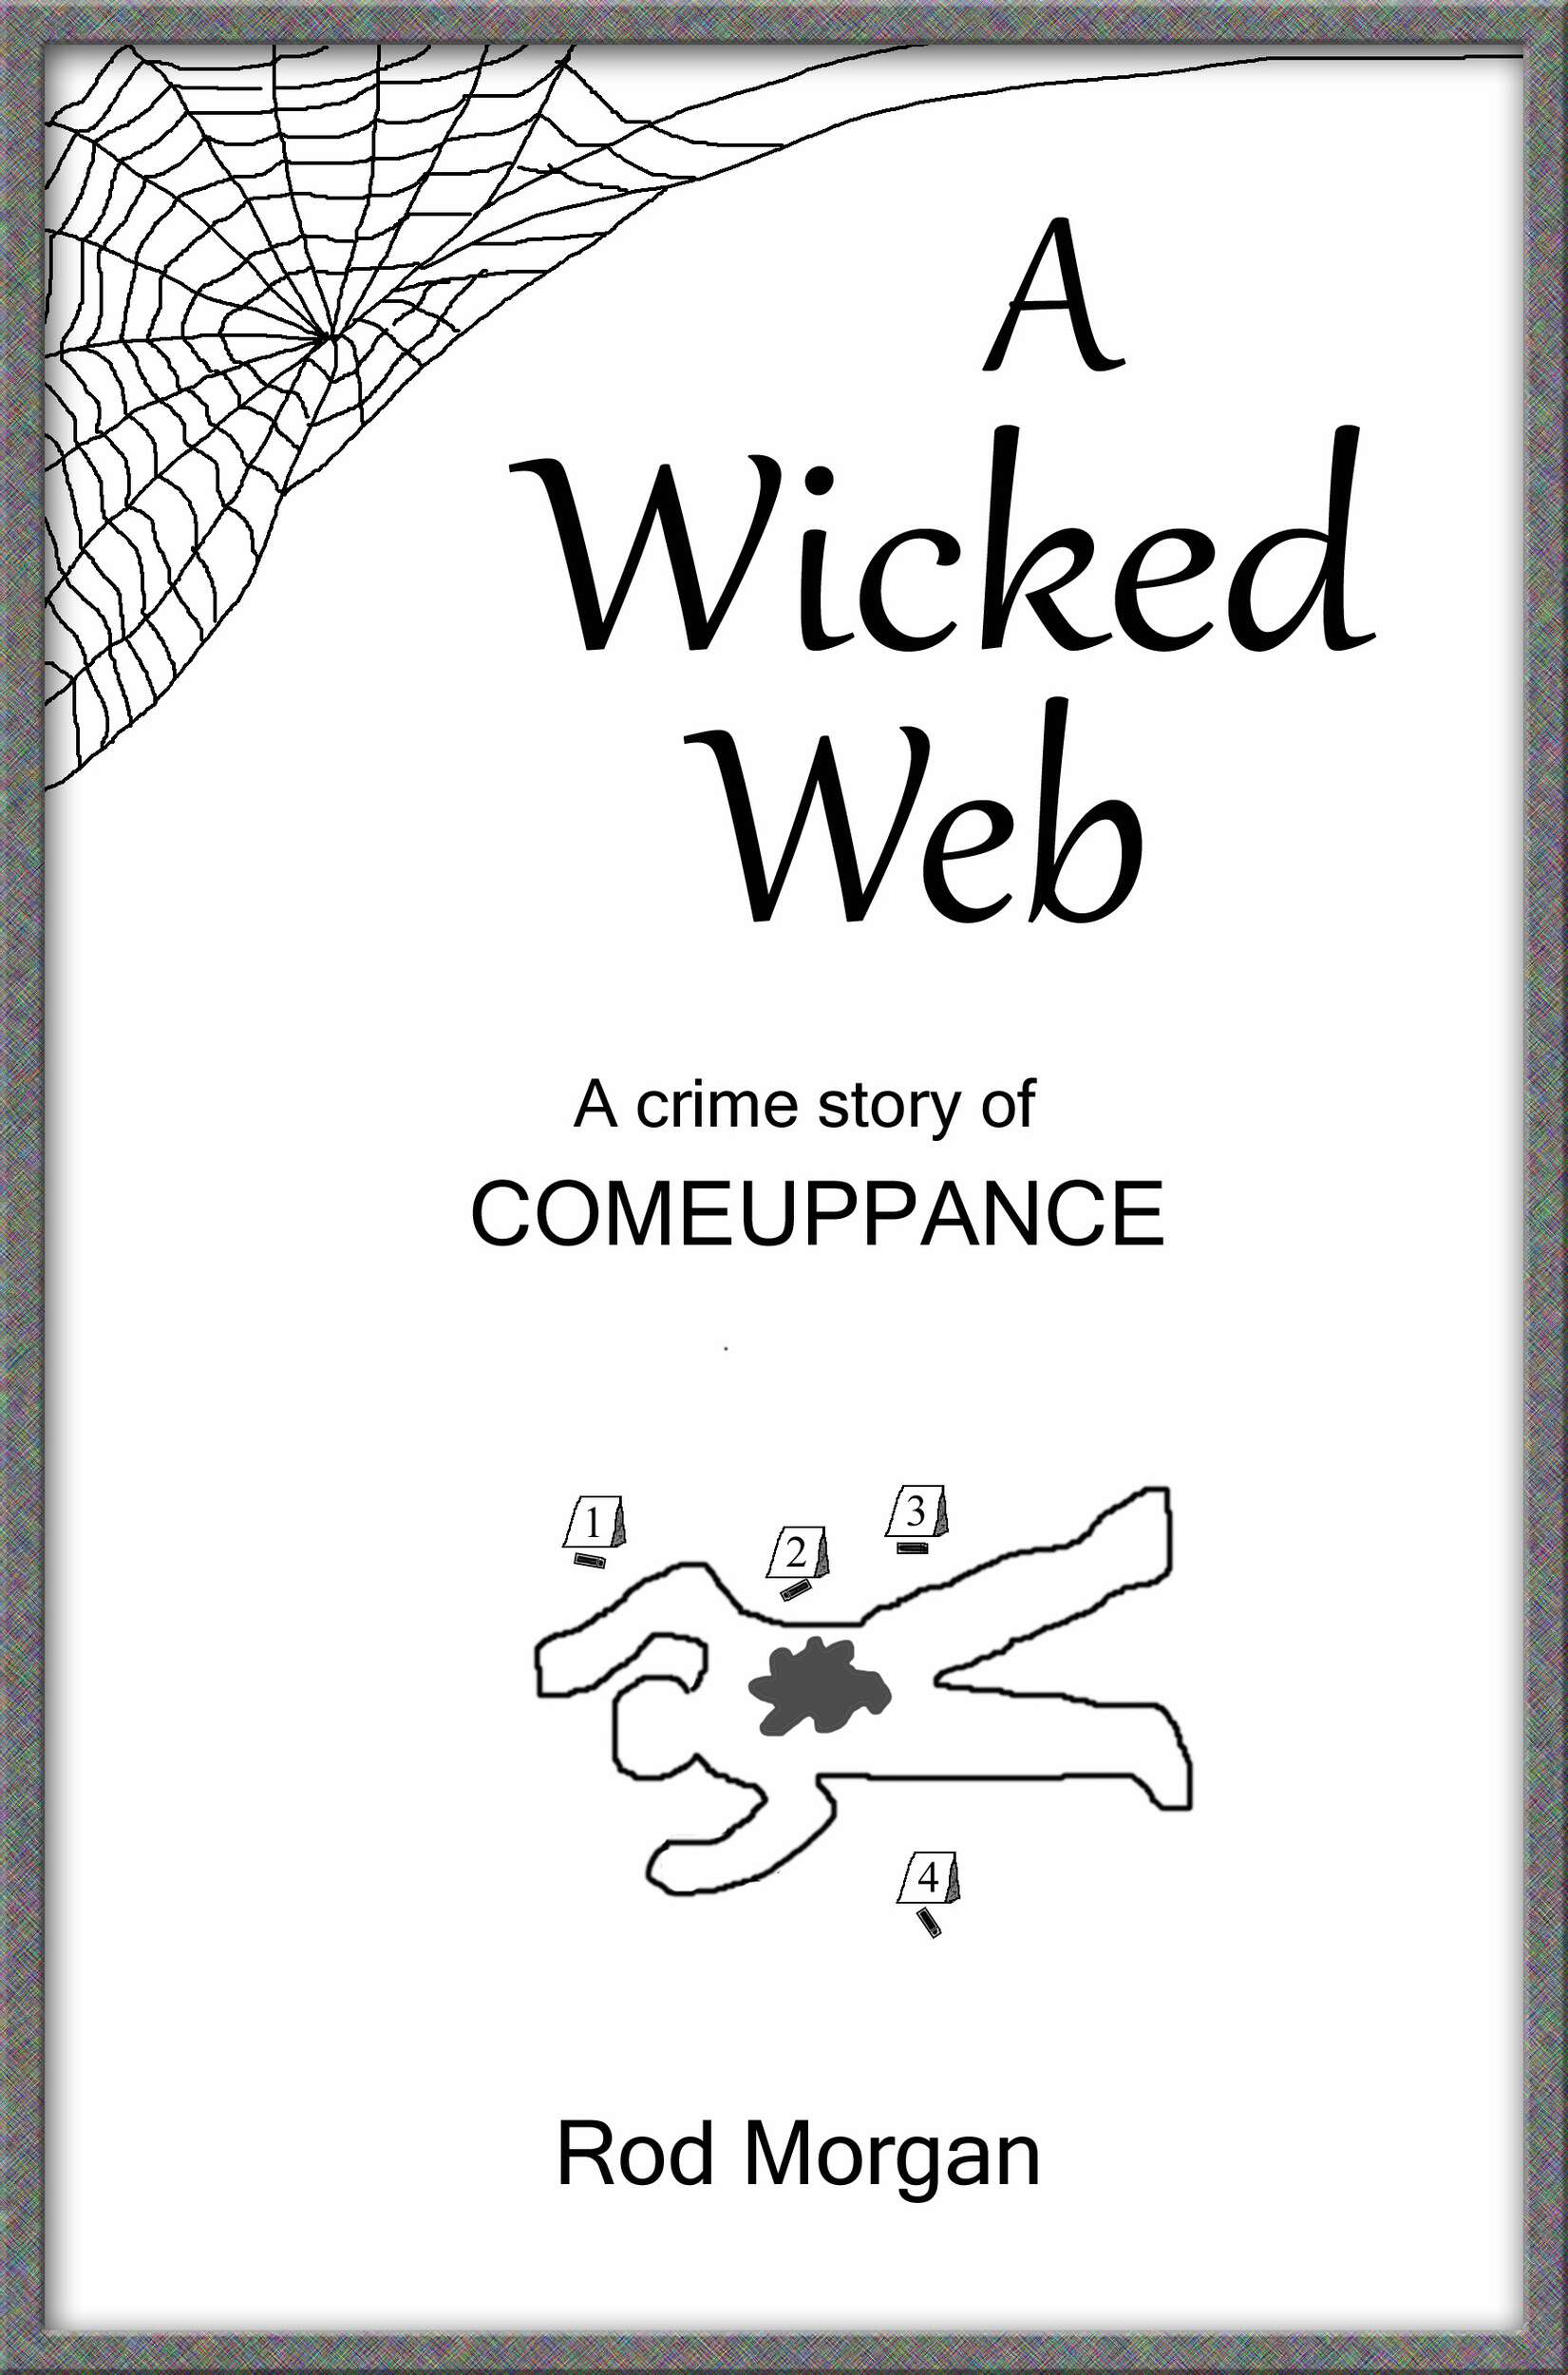 Morgan - A Wicked Web Cover copy